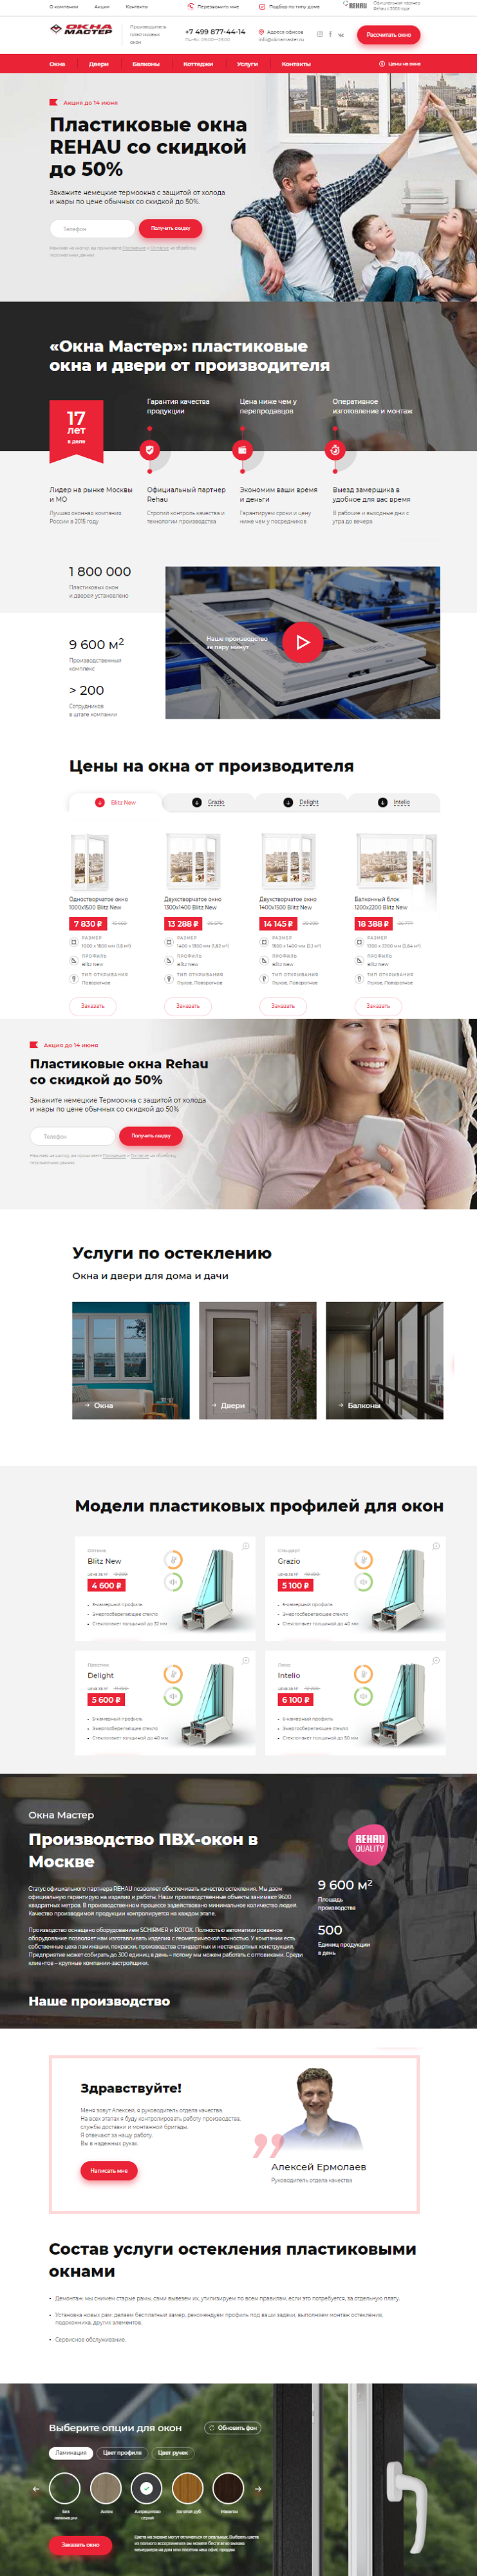 Разработка веб сайта в москве